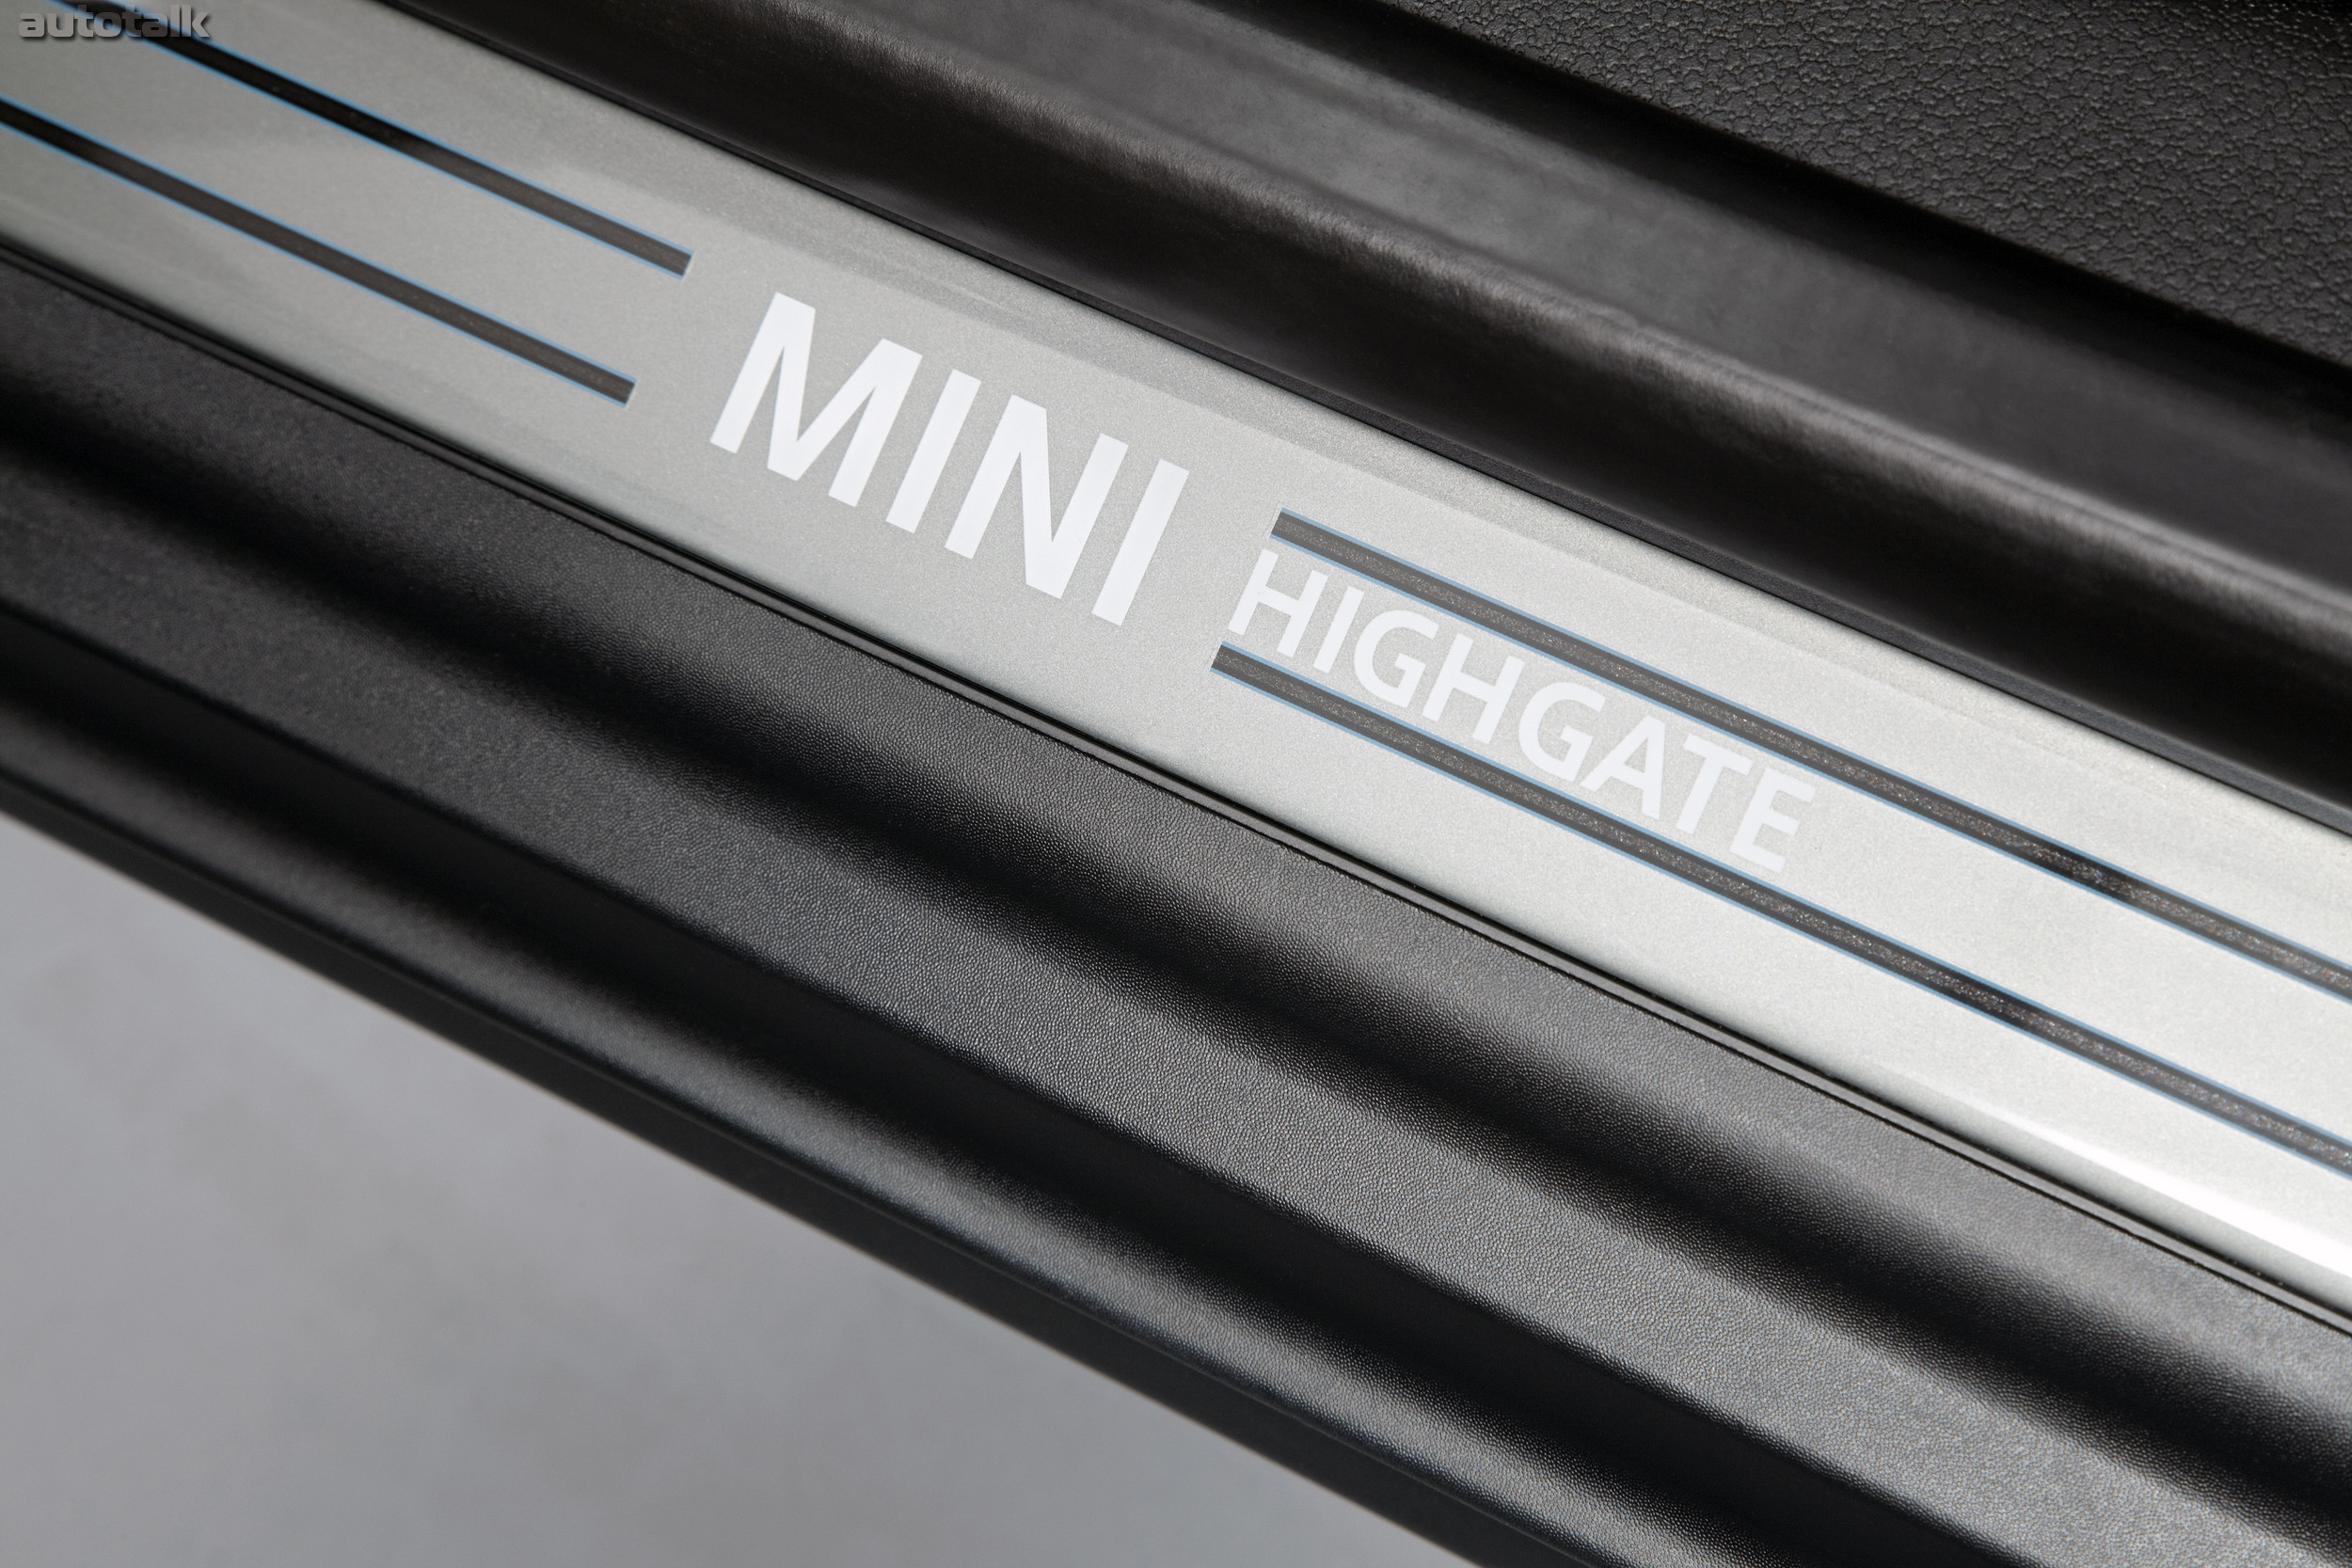 MINI Cabrio Highgate Concept